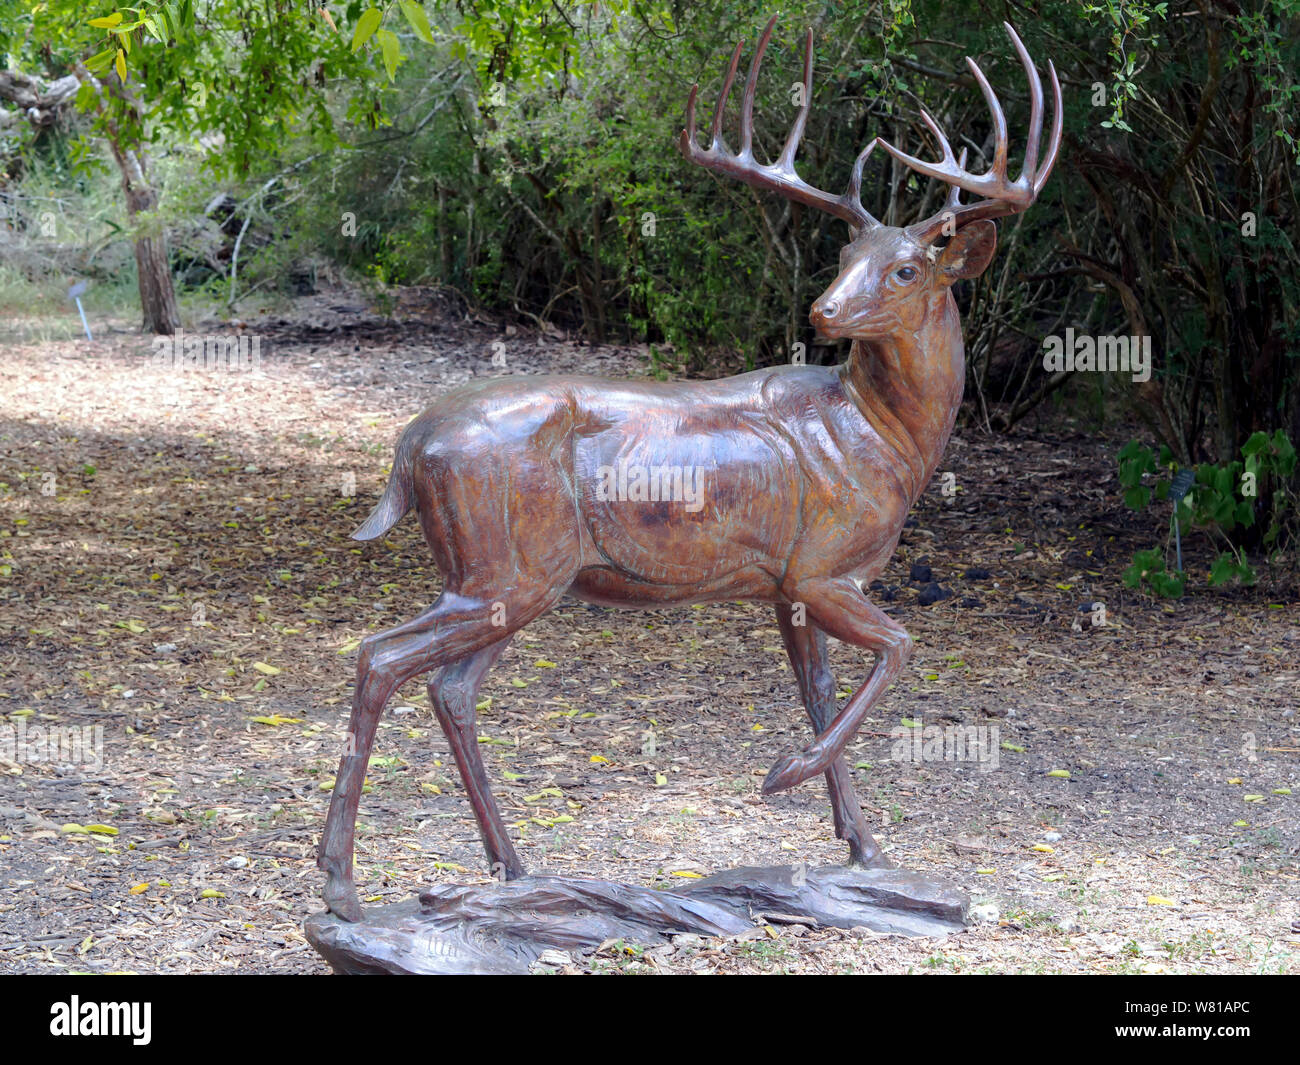 Bronzestatue von einem Bock Hirsch mit 12 Punkt Geweih. South Texas Botanical Gardens and Nature Center in Corpus Christi, Texas USA. Stockfoto